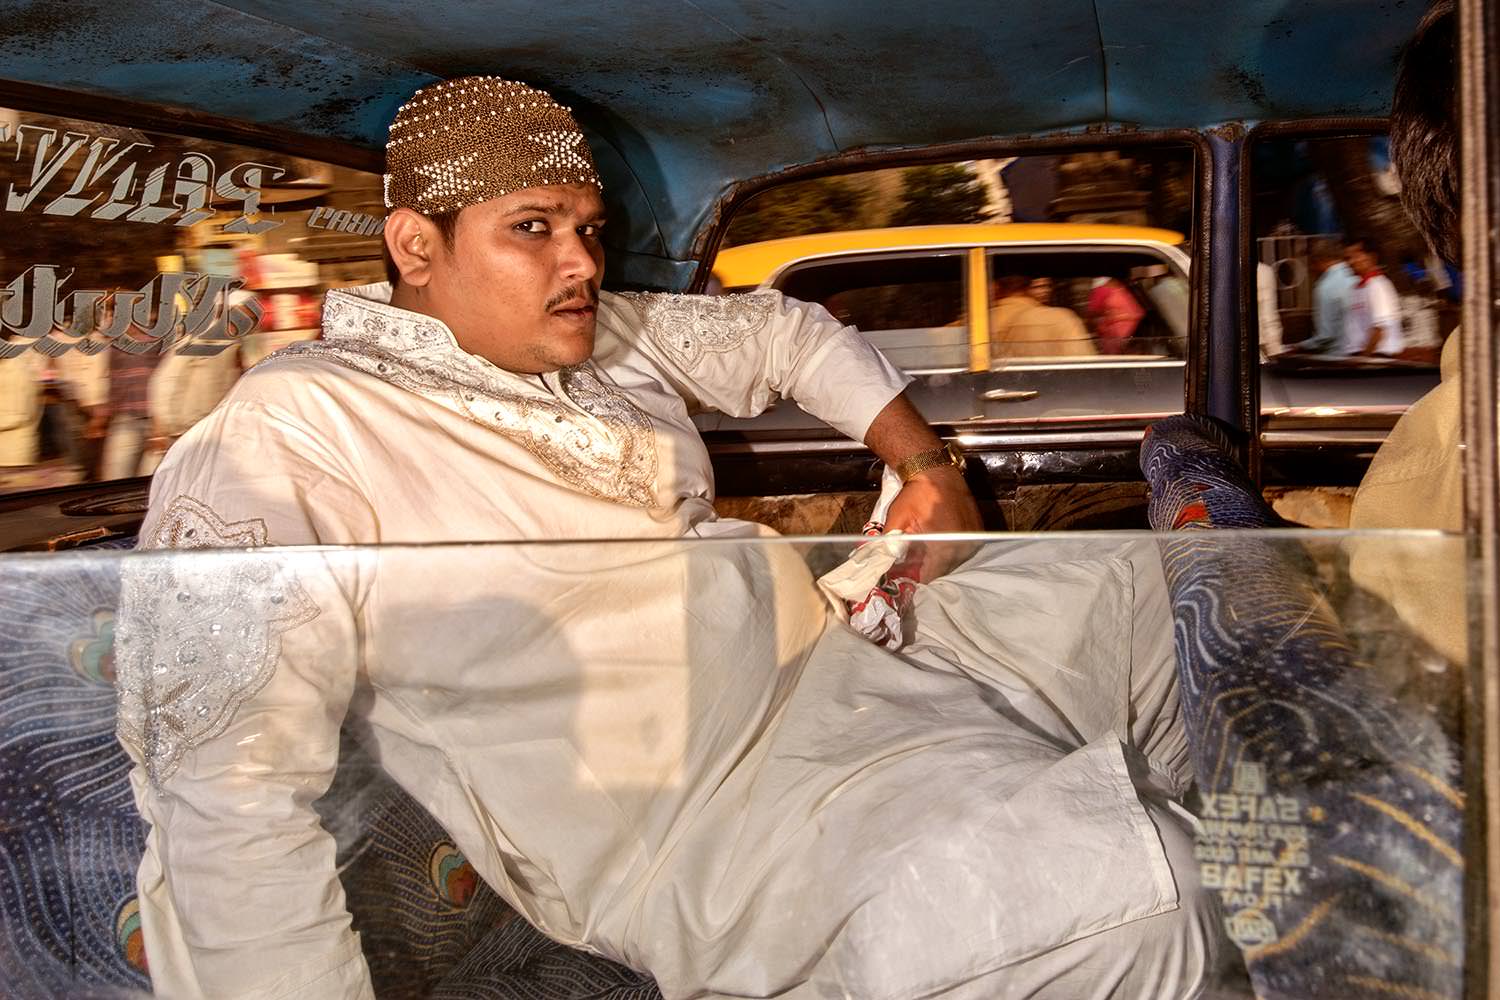 印度孟买的疯狂出租车 镜头下夸张的人物姿态